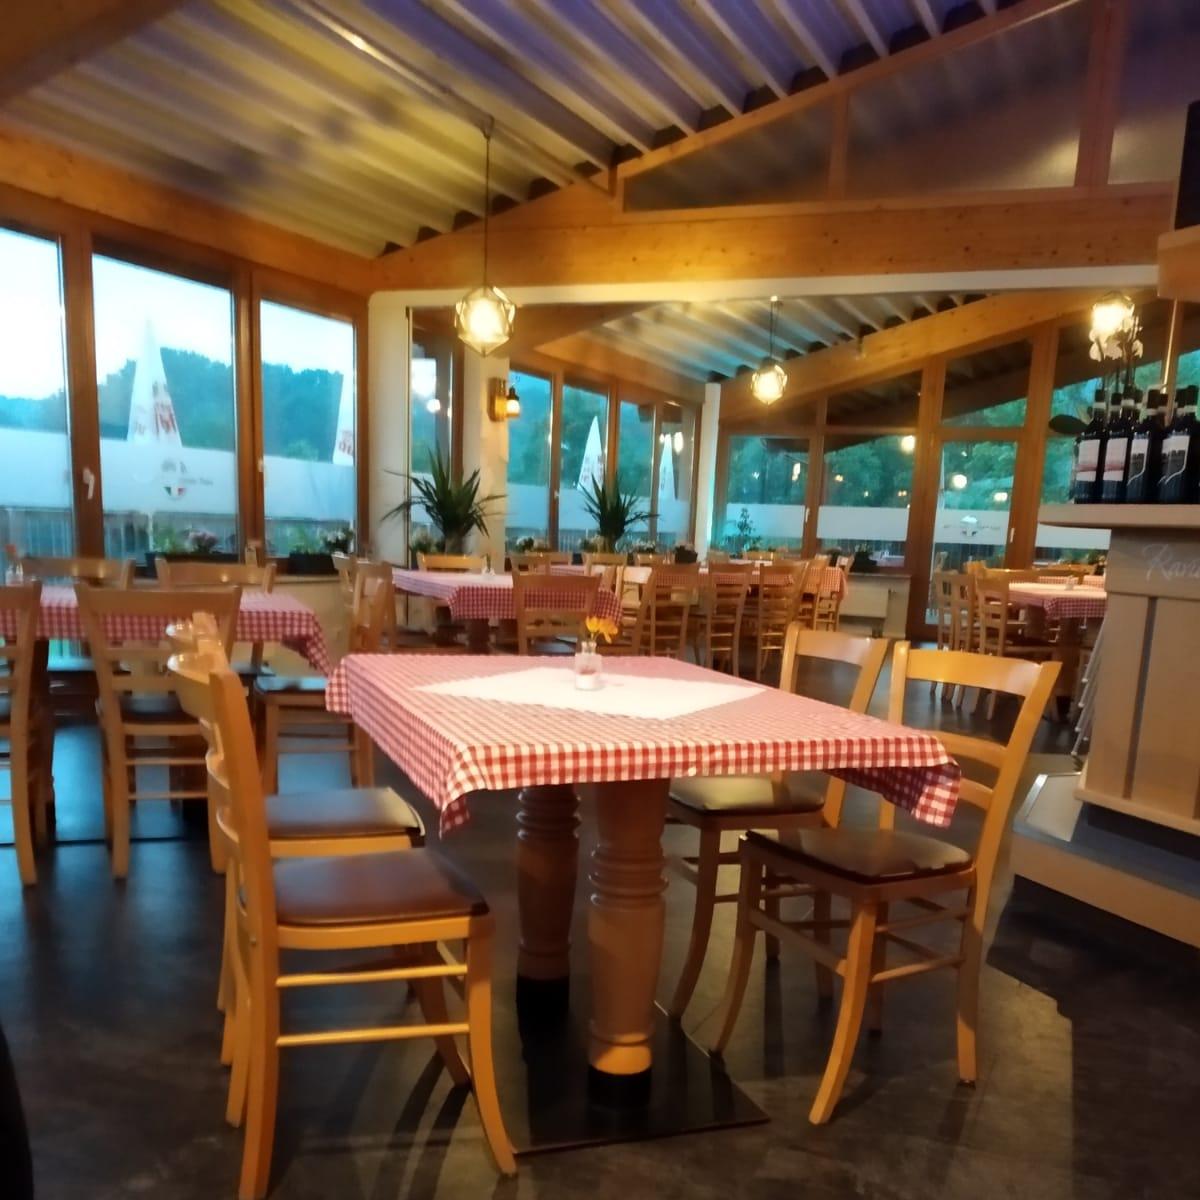 Restaurant "Pinseria SALENTO" in Brackenheim